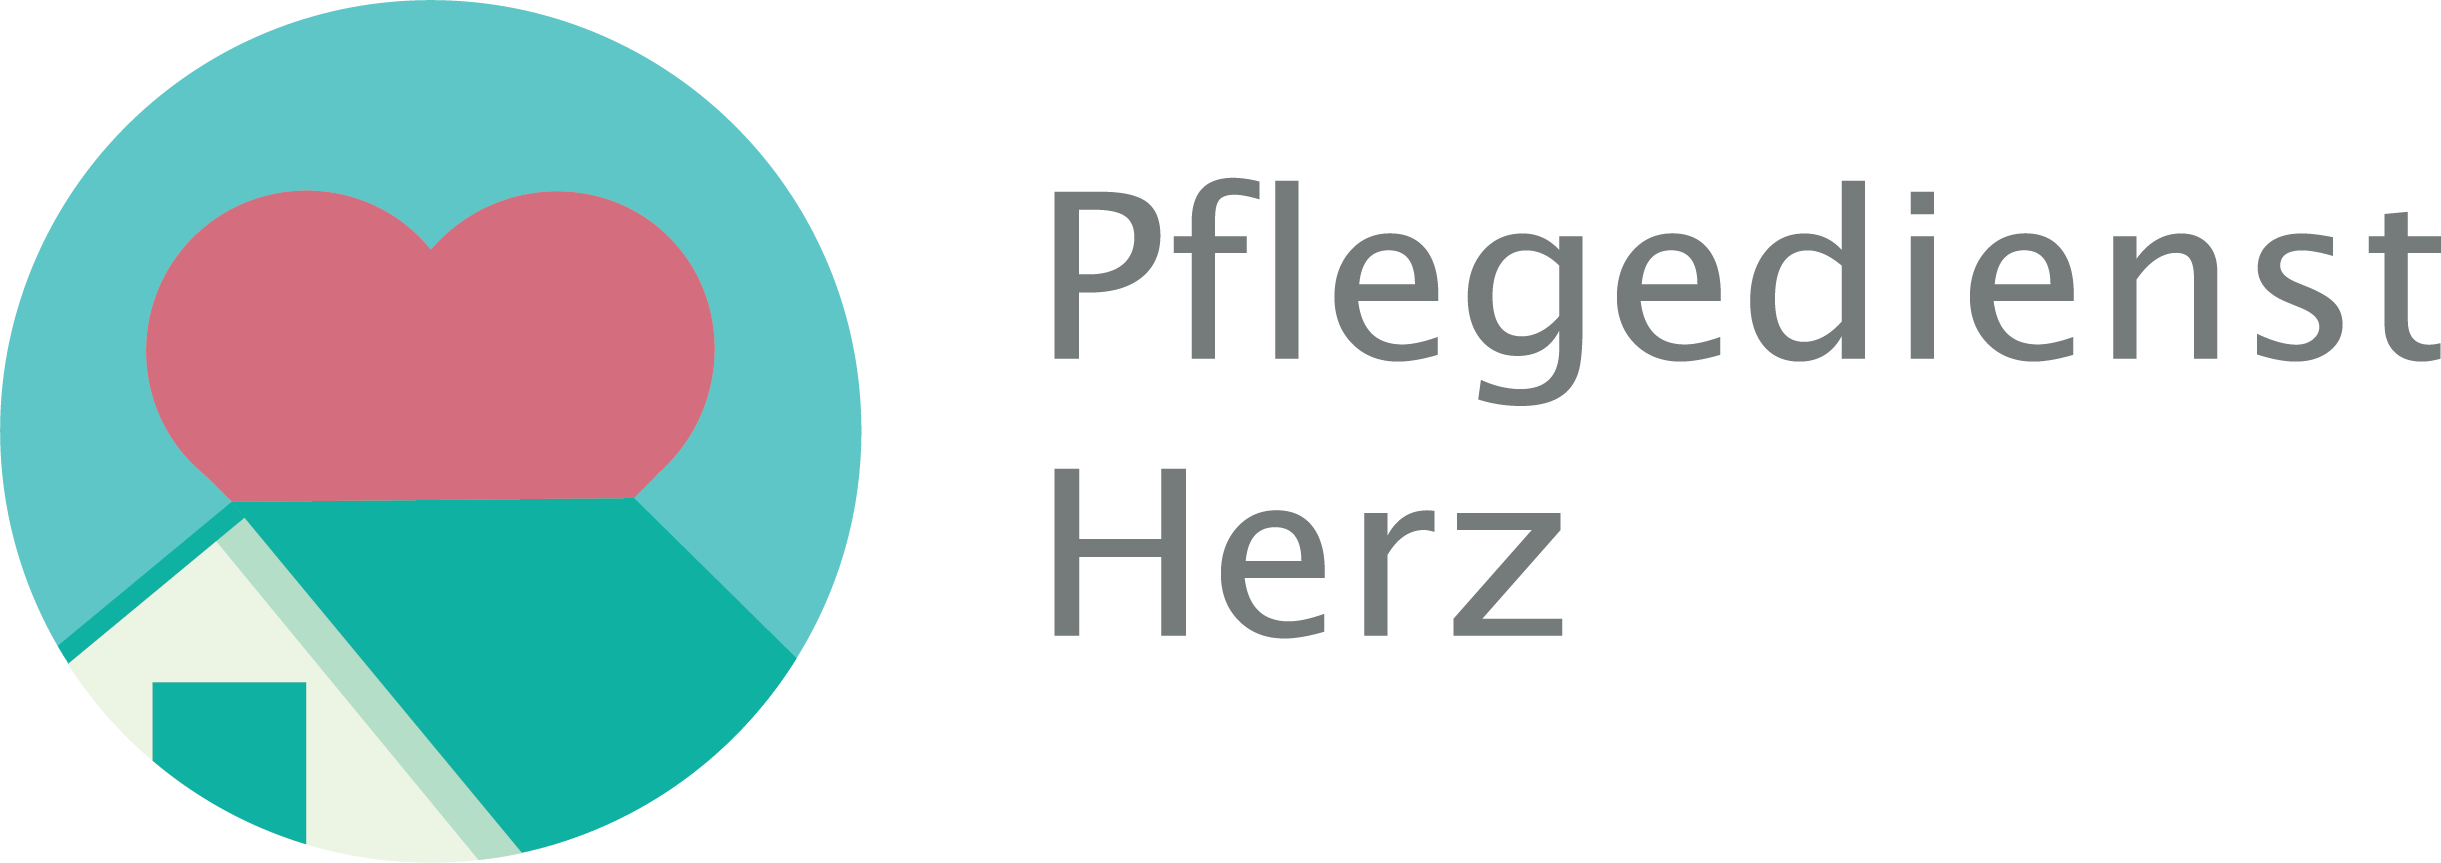 Pflegedienst Herz GmbH | Ihr ambulanter Pflegedienst in Offenbach am Main